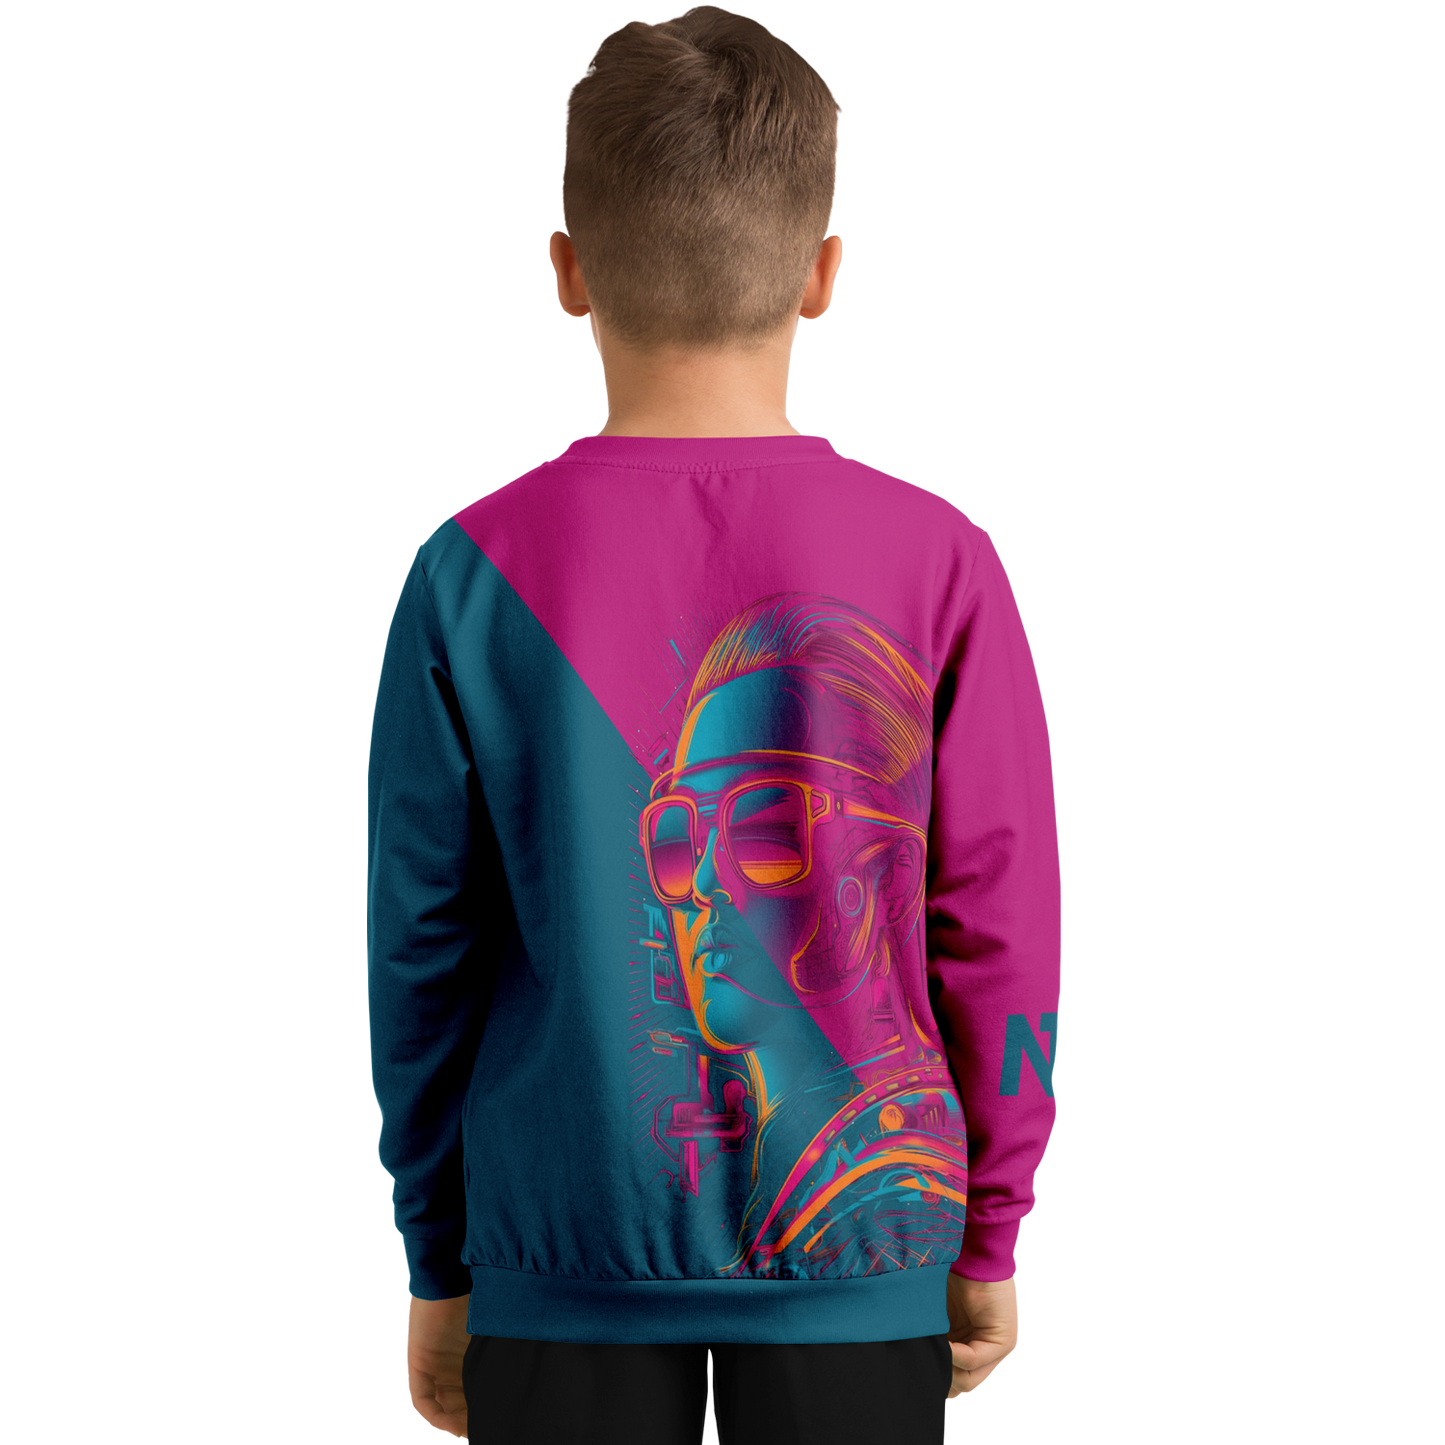 Athletic Kids/Youth Sweatshirt – AOP 012